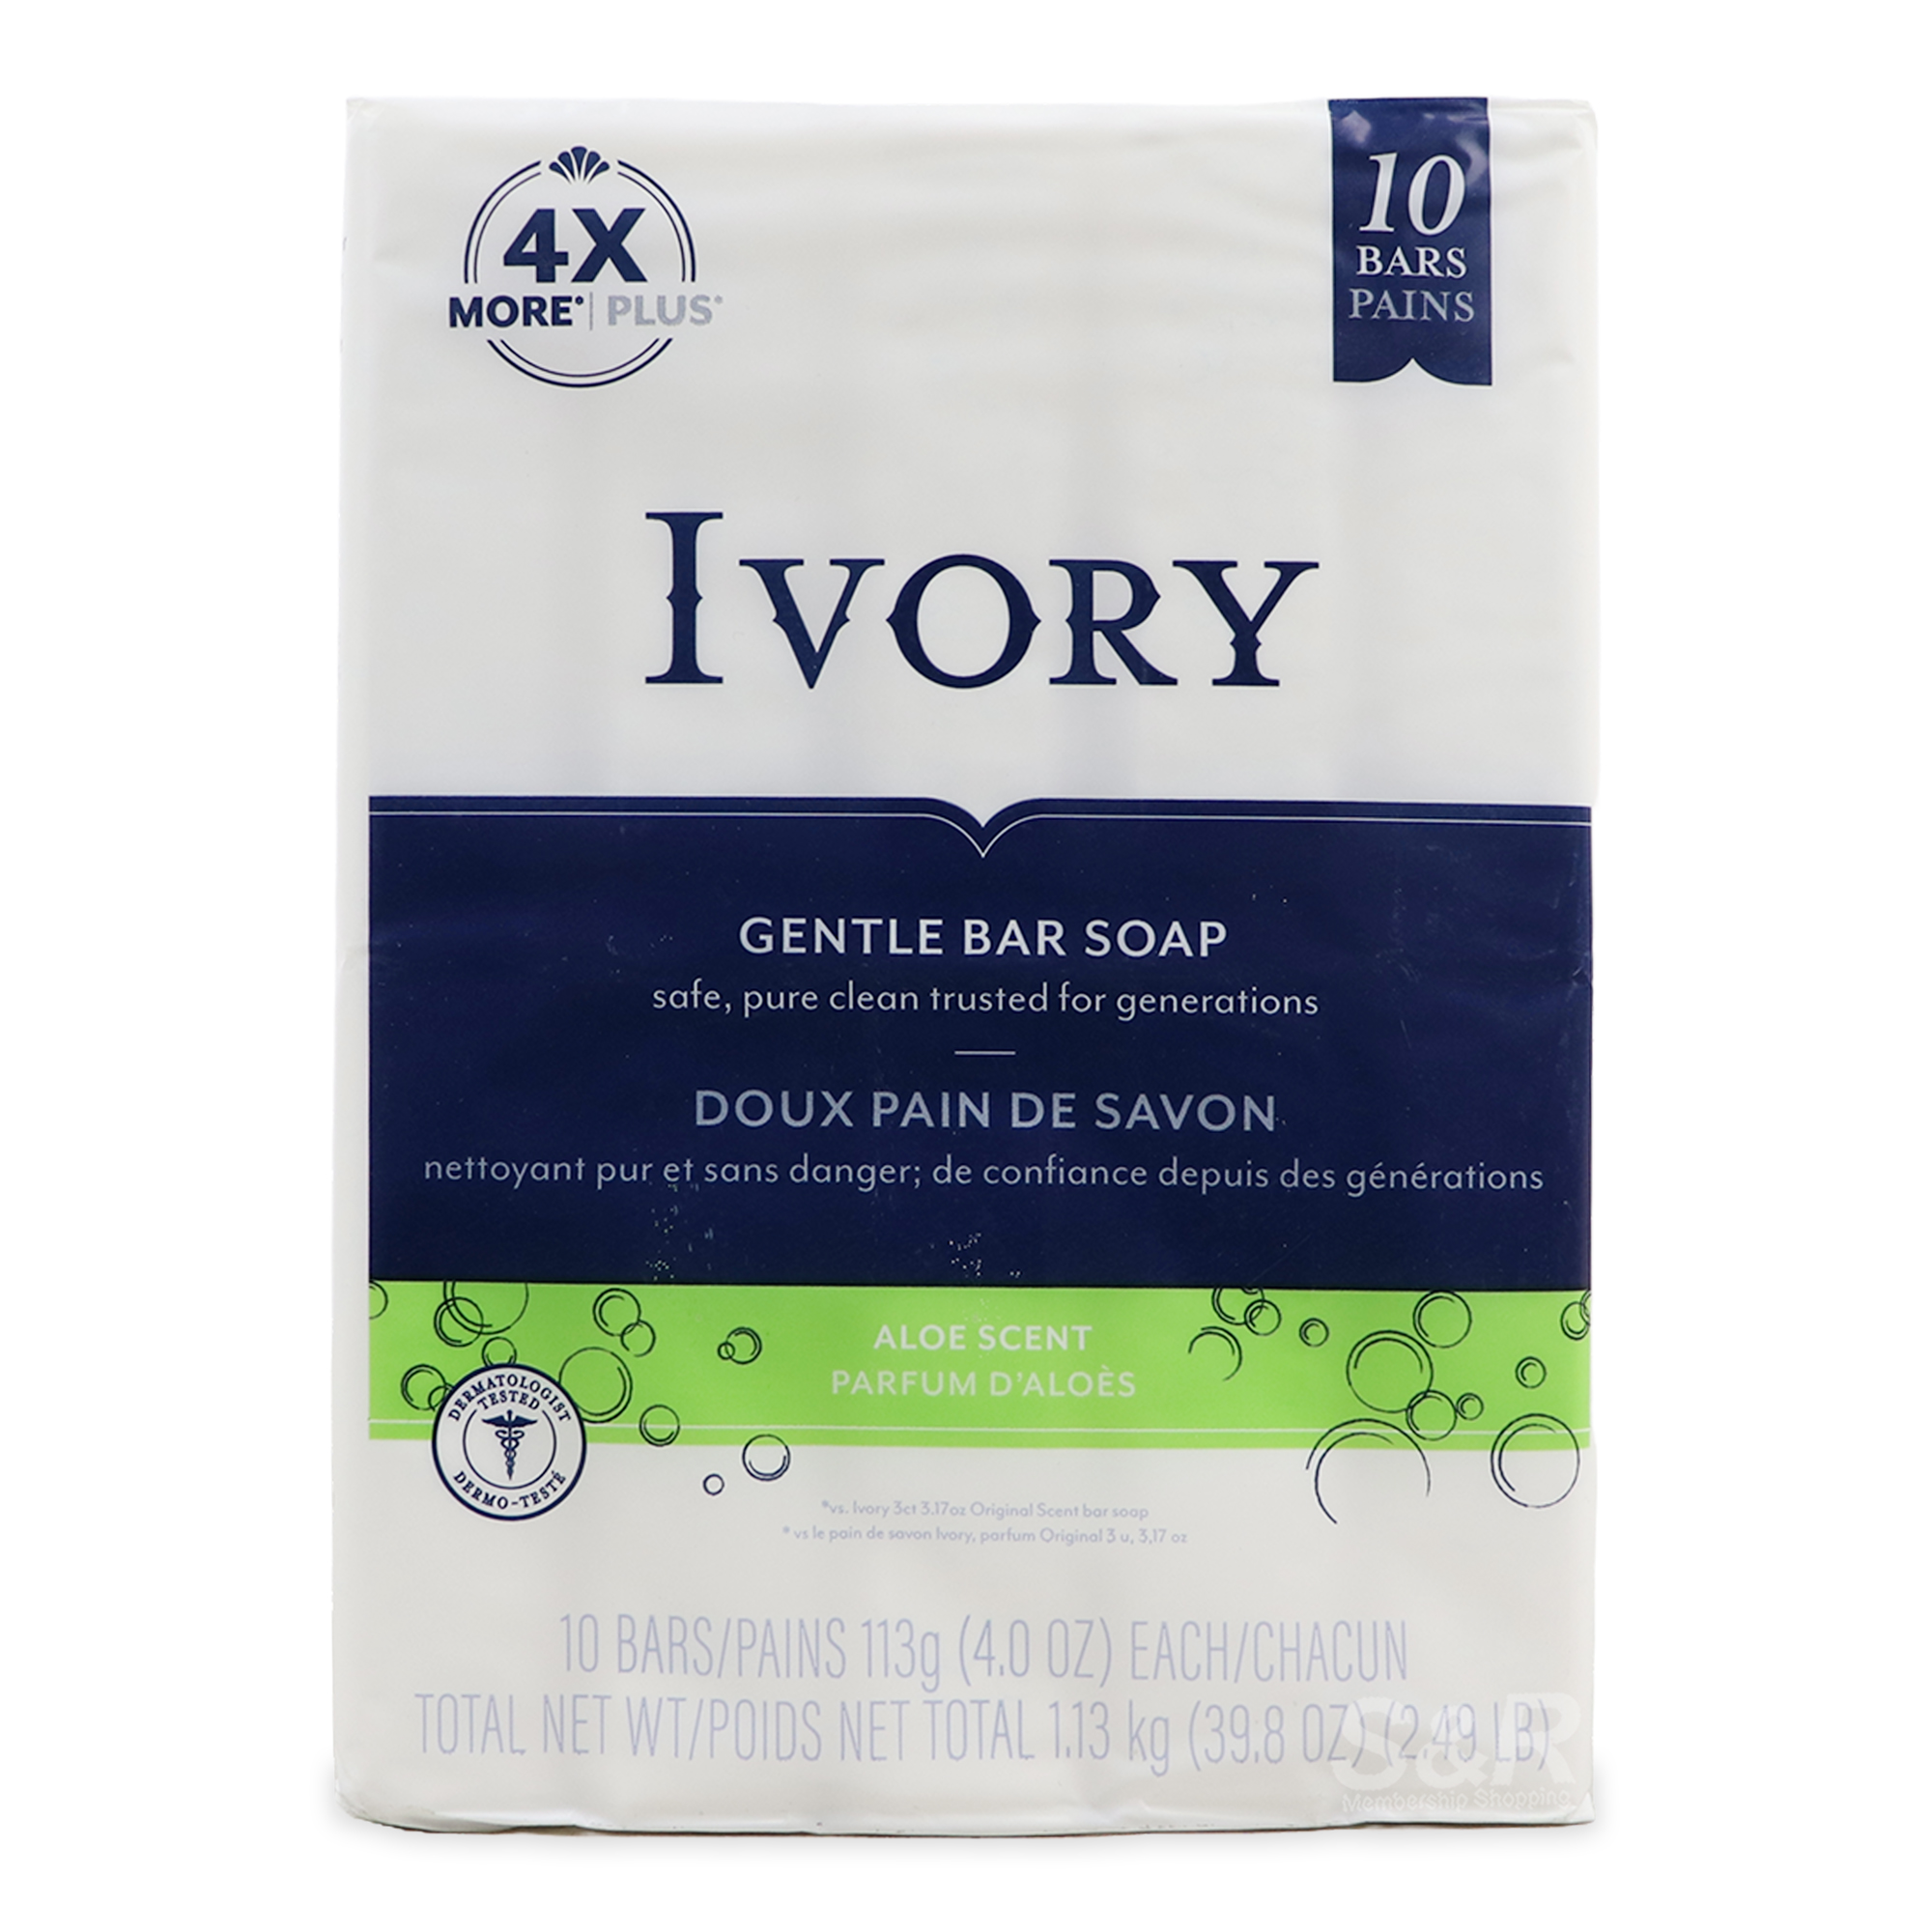 Ivory Aloe Scent Bar Soap 10pcs